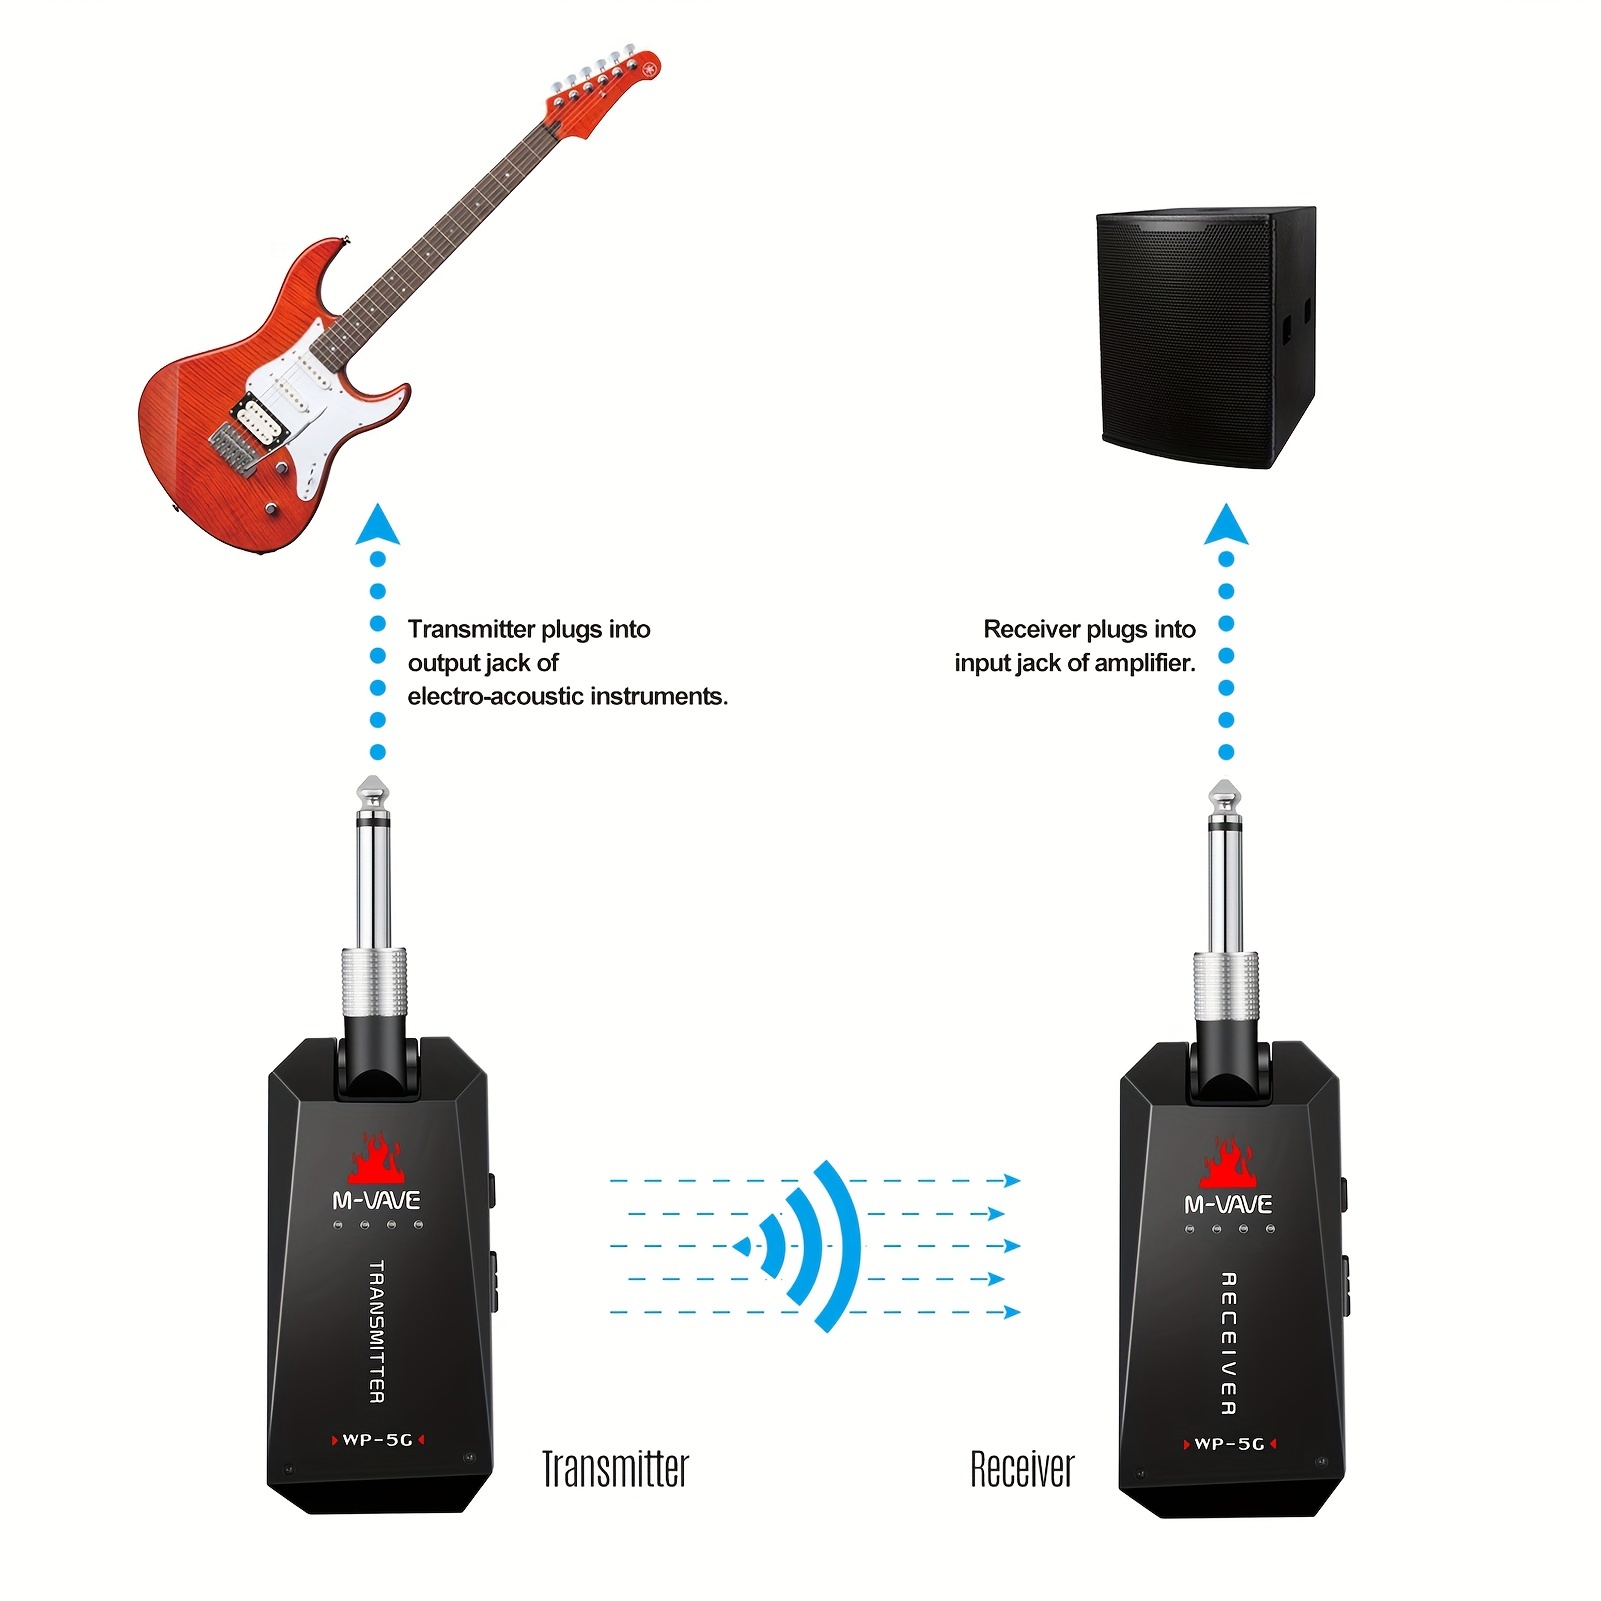 JACK AUDIO sans fil UHF pour guitare - Recepteur - Emetteur